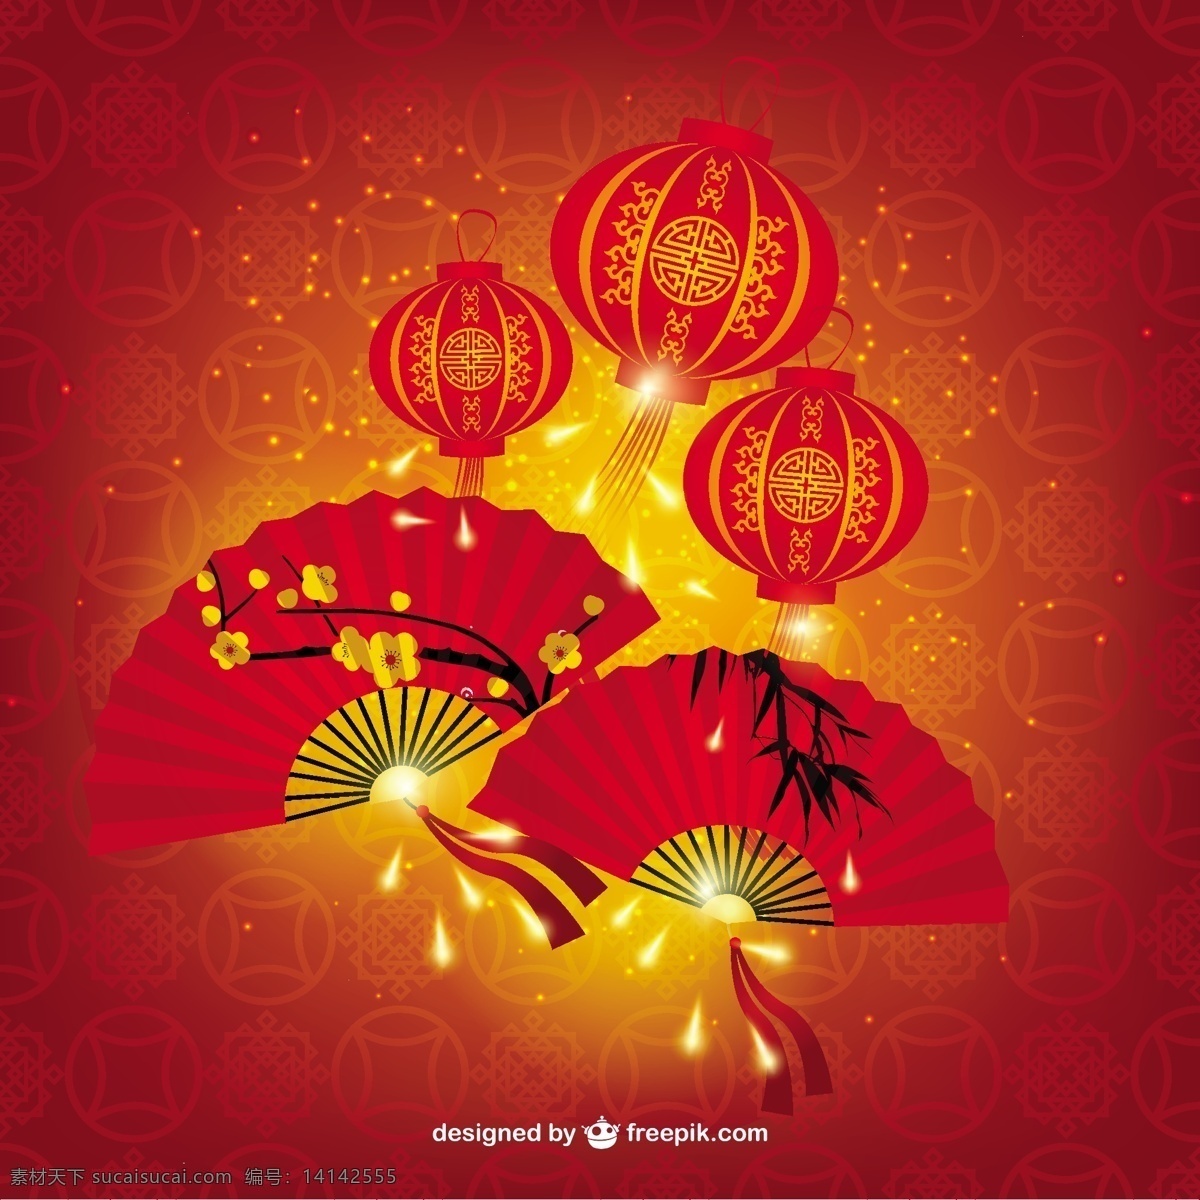 中国灯笼素材 灯笼素材 灯笼 扇子 新年